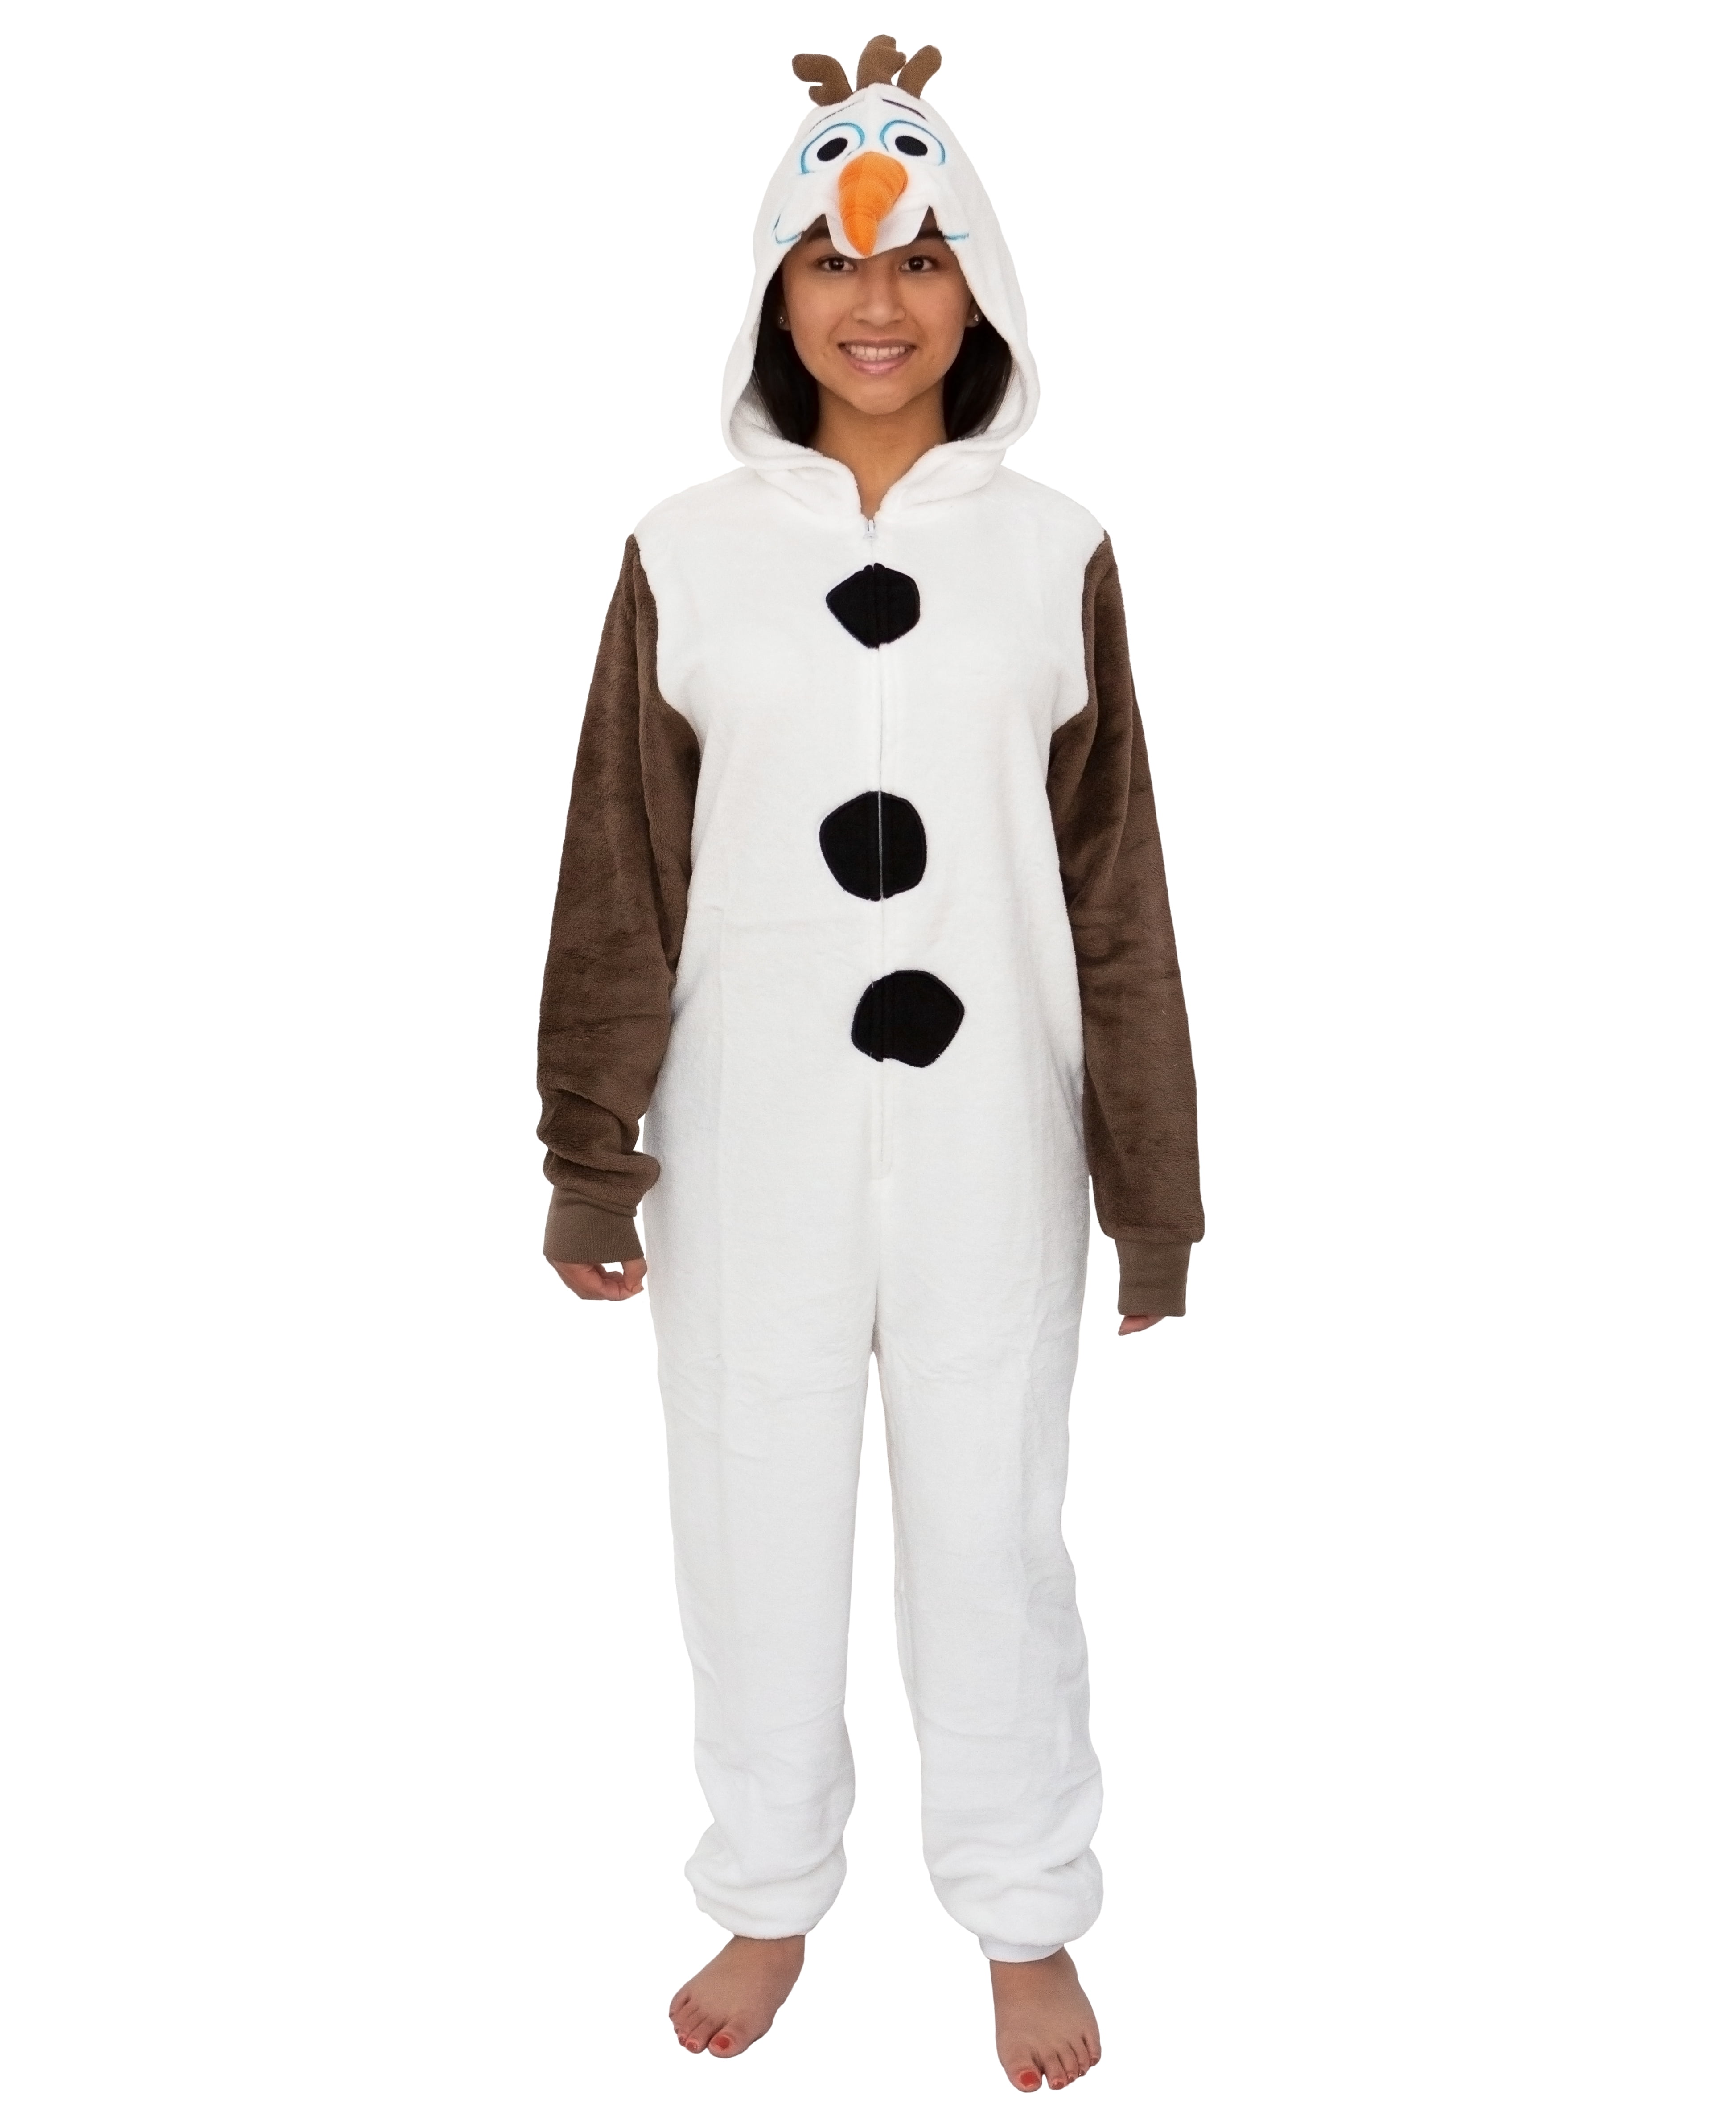 Olaf Details about   Disney Frozen Sleep Top So Soft & Fuzzy Size 2x 18w-20w 